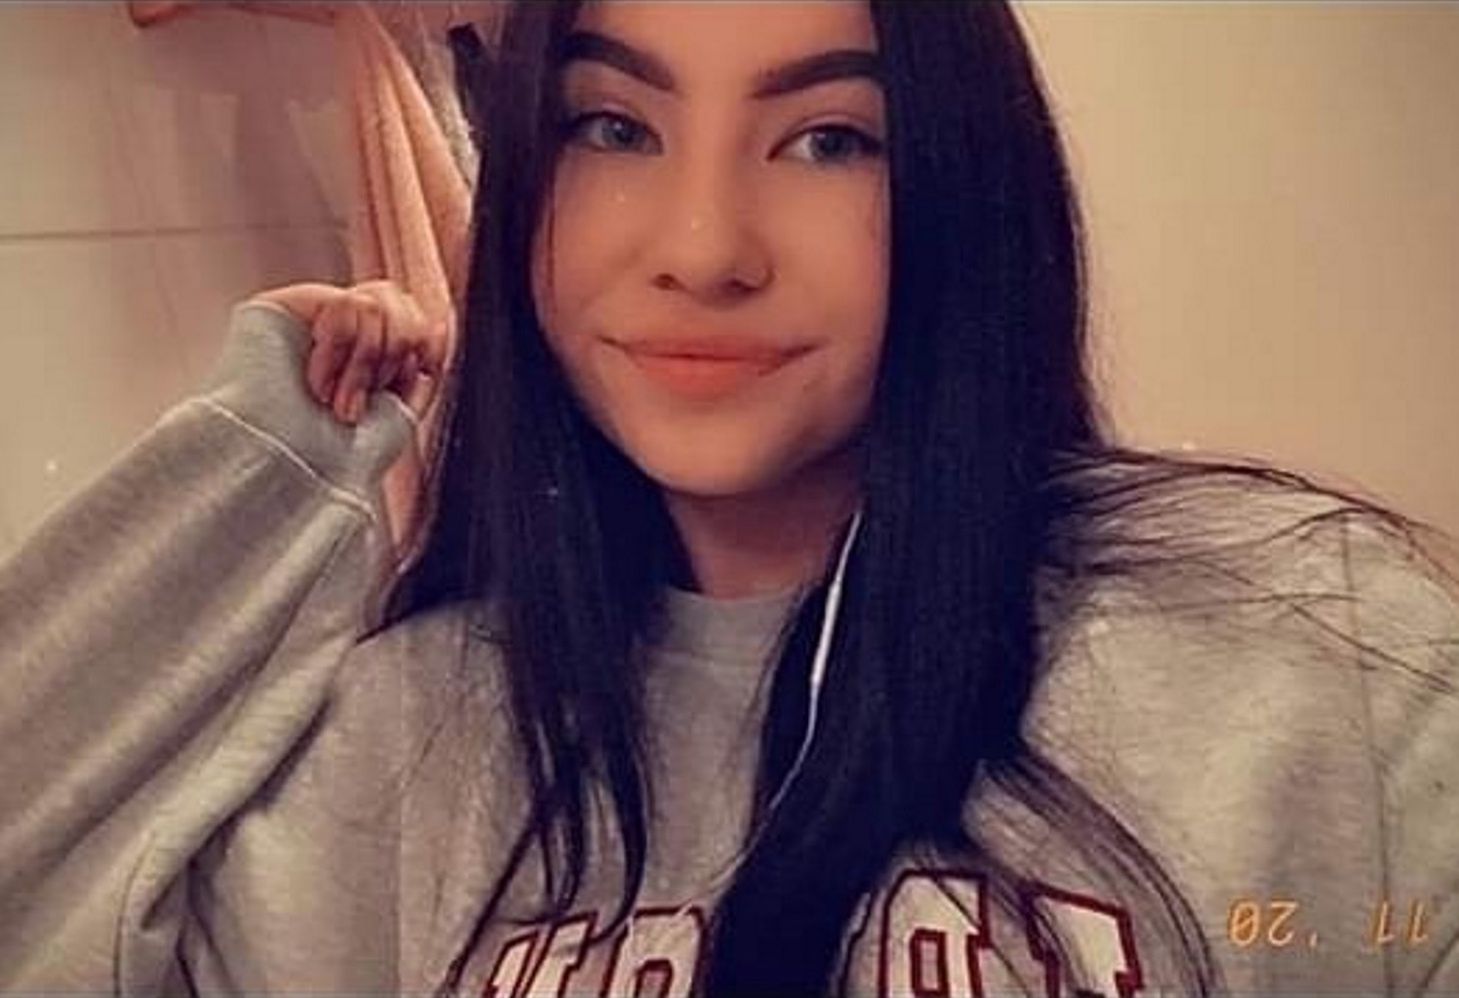 Zaginęła nastolatka z Kwidzyna. Policja szuka 16-letniej Amelii Łozińskiej